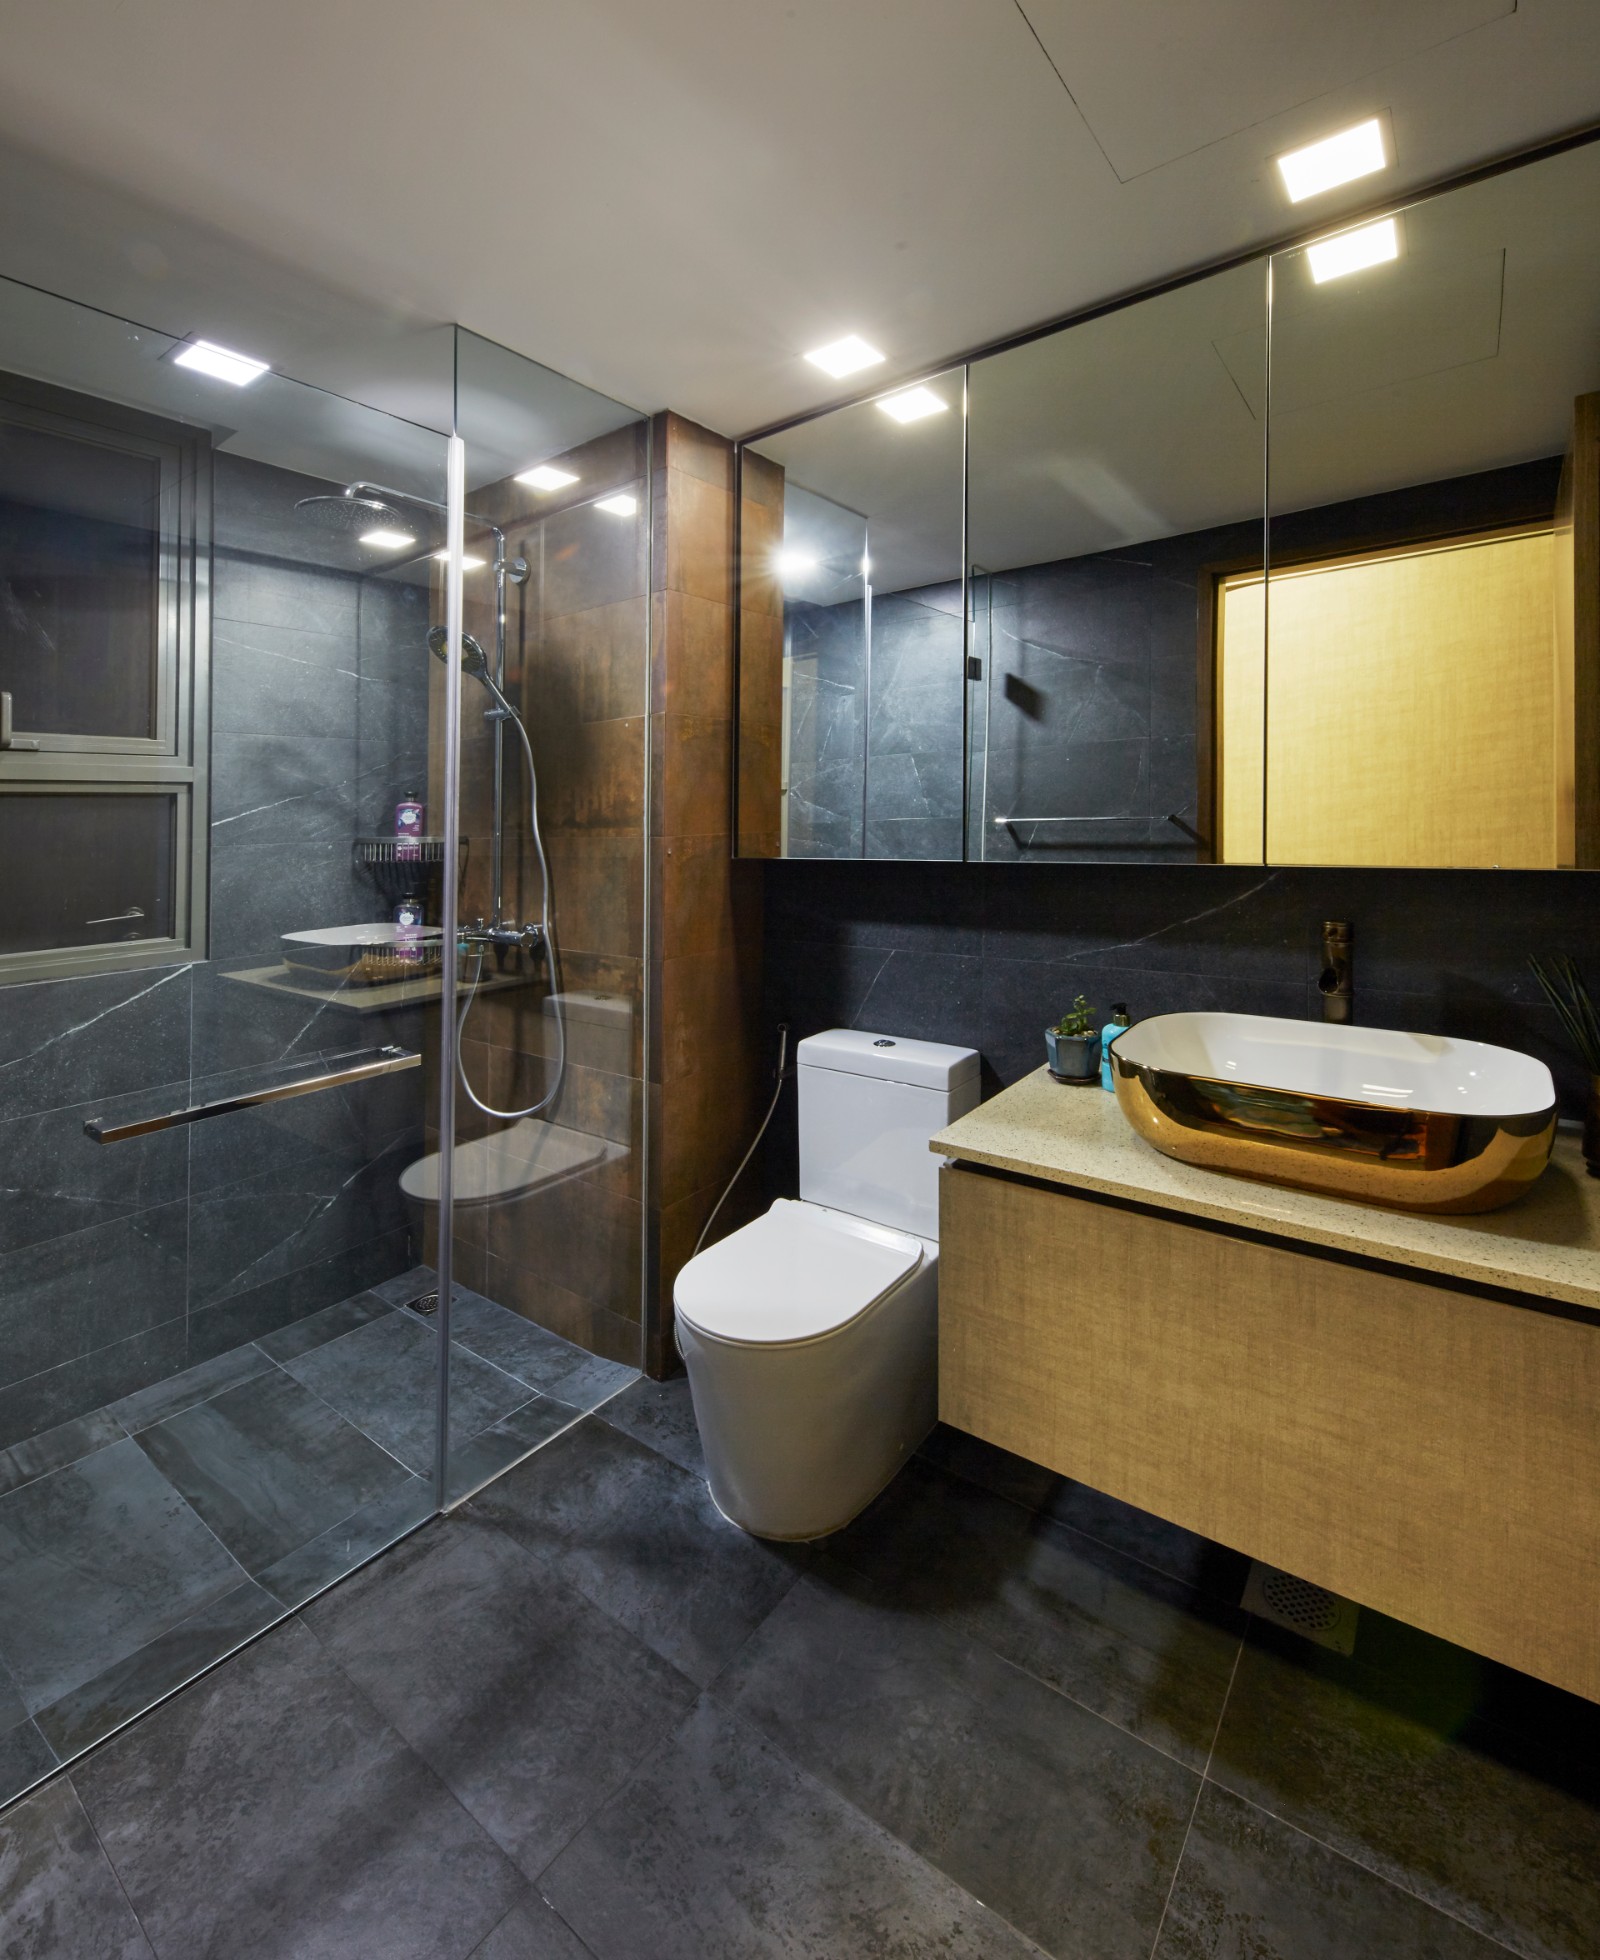 Eclectic, Modern, Rustic Design - Bathroom - Condominium - Design by Carpenters 匠